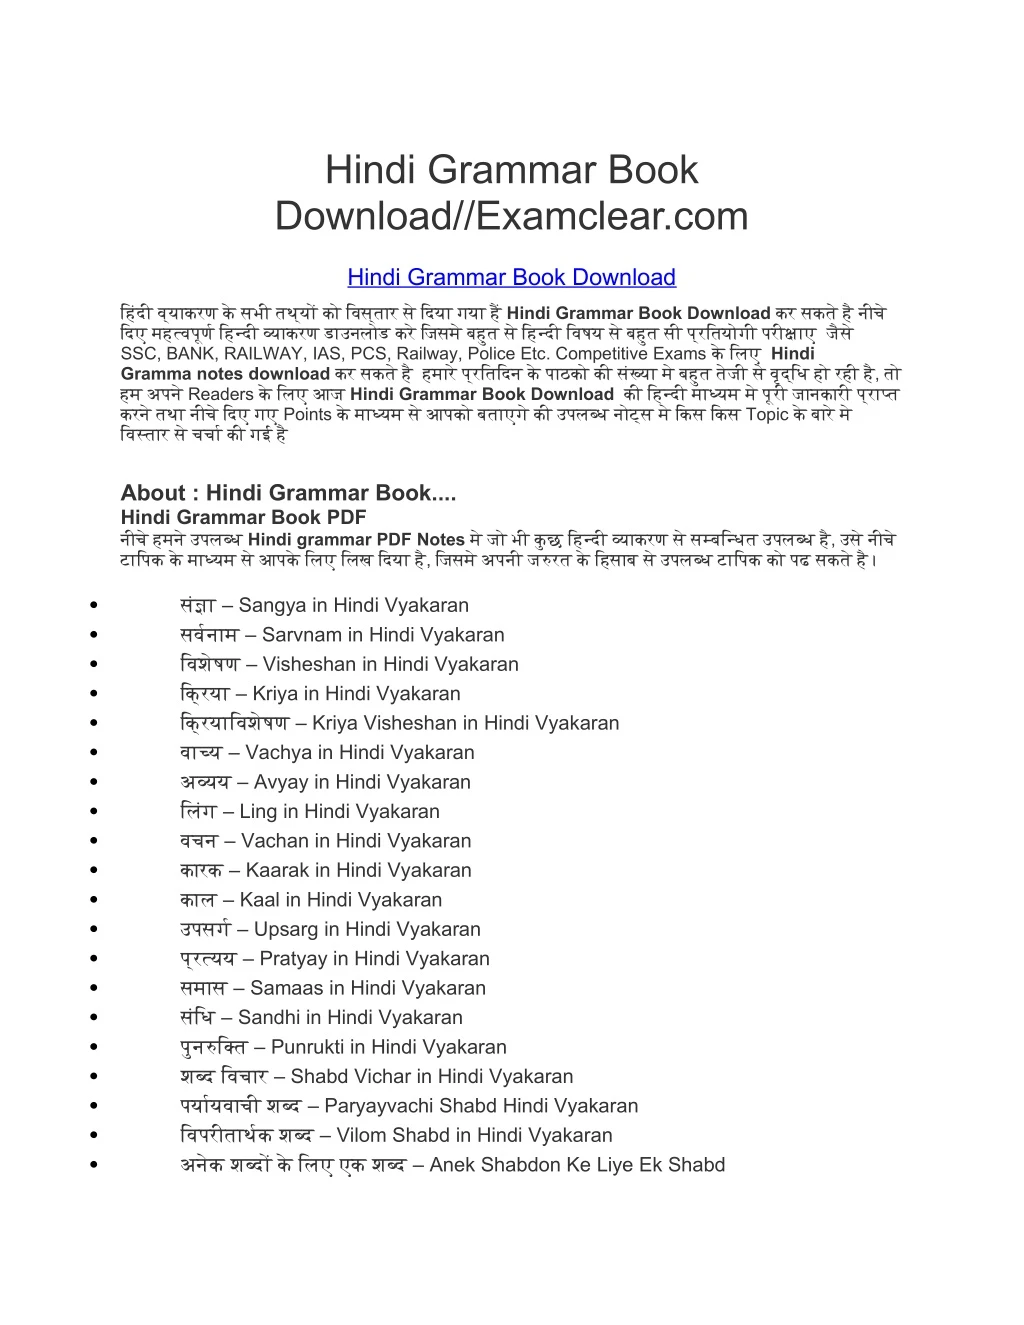 hindi grammar book download examclear com